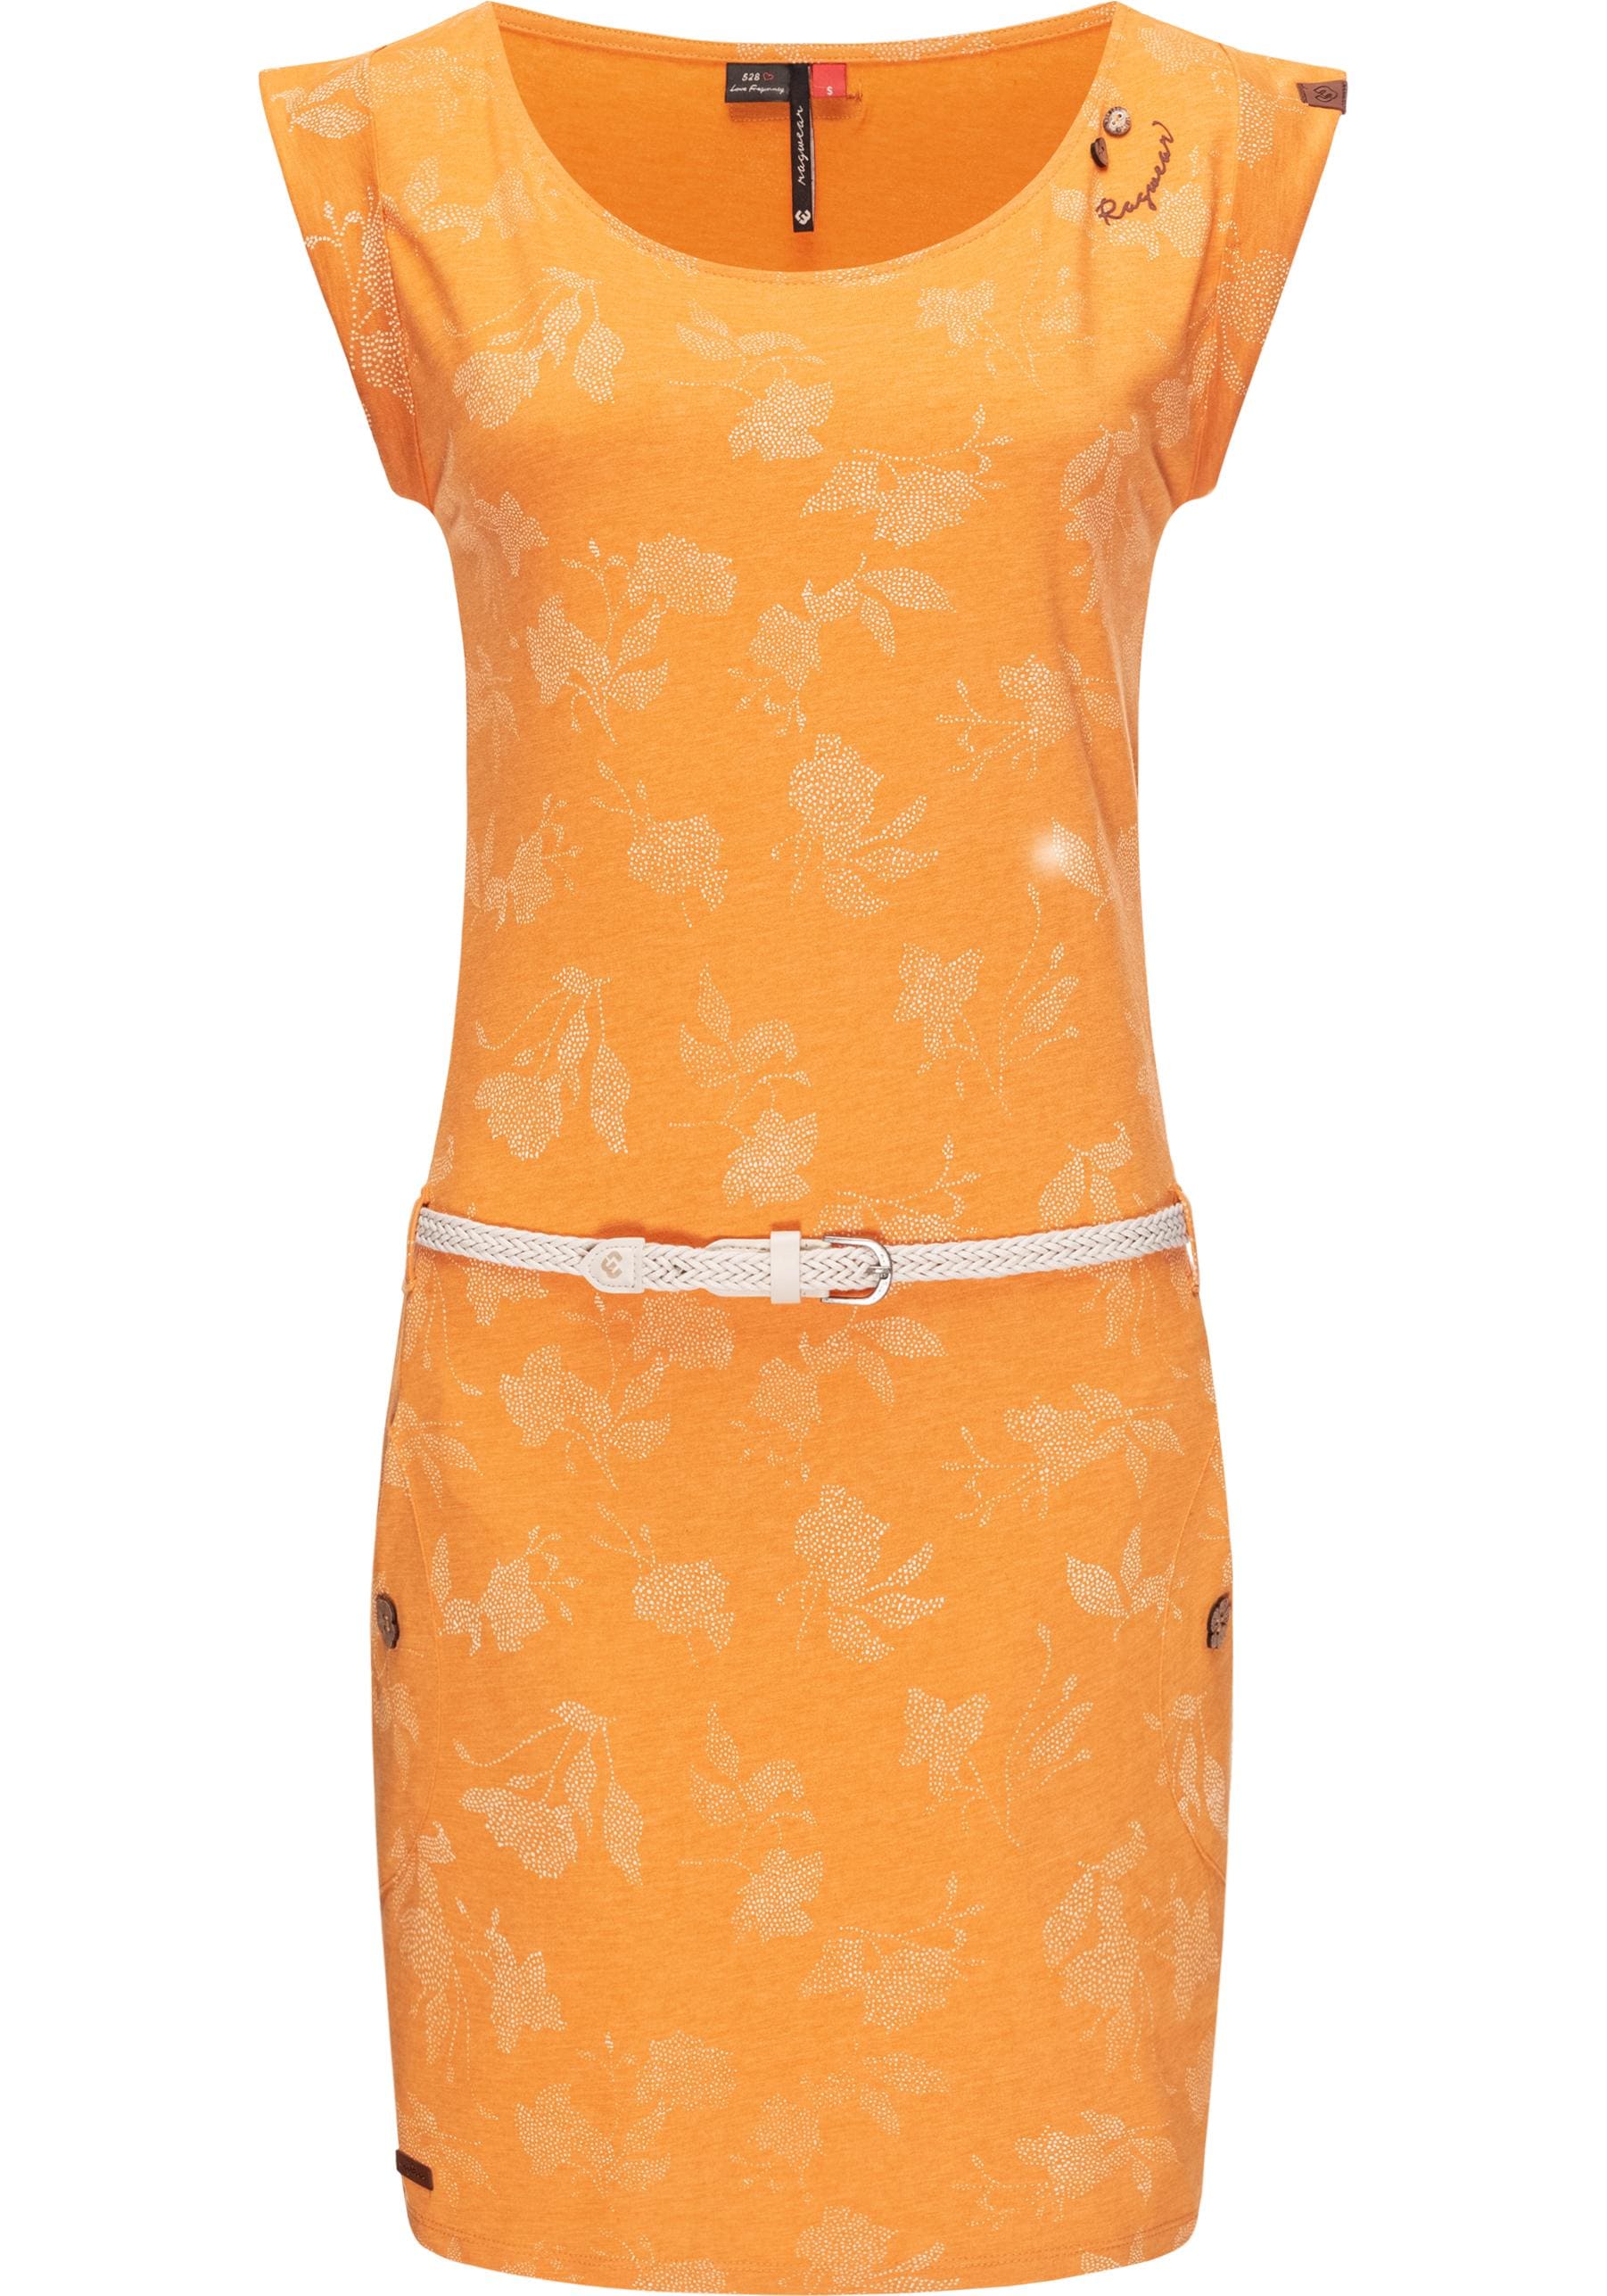 Shirtkleid »Tag Rose Intl.«, stylisches Sommerkleid mit Print und hochwertigem Gürtel